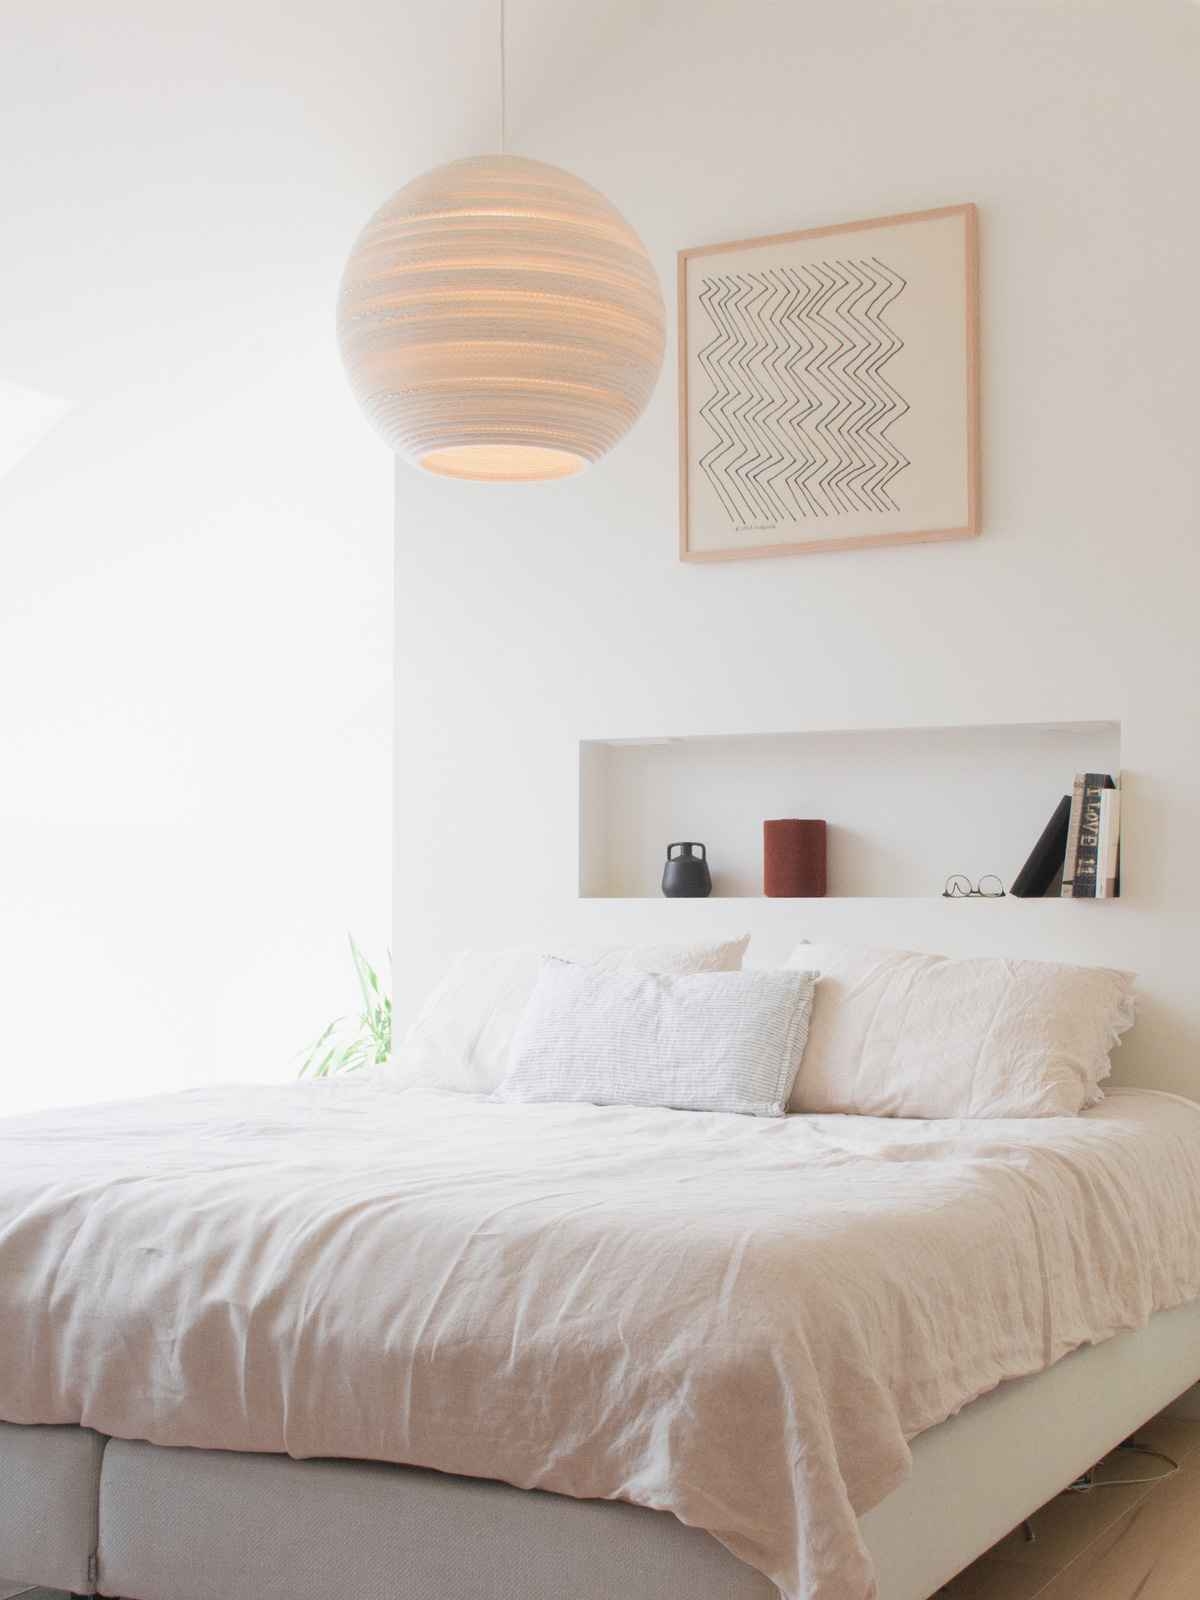 Lampen Für Das Schlafzimmer | Designort Premium throughout Welche Lampen Fürs Schlafzimmer